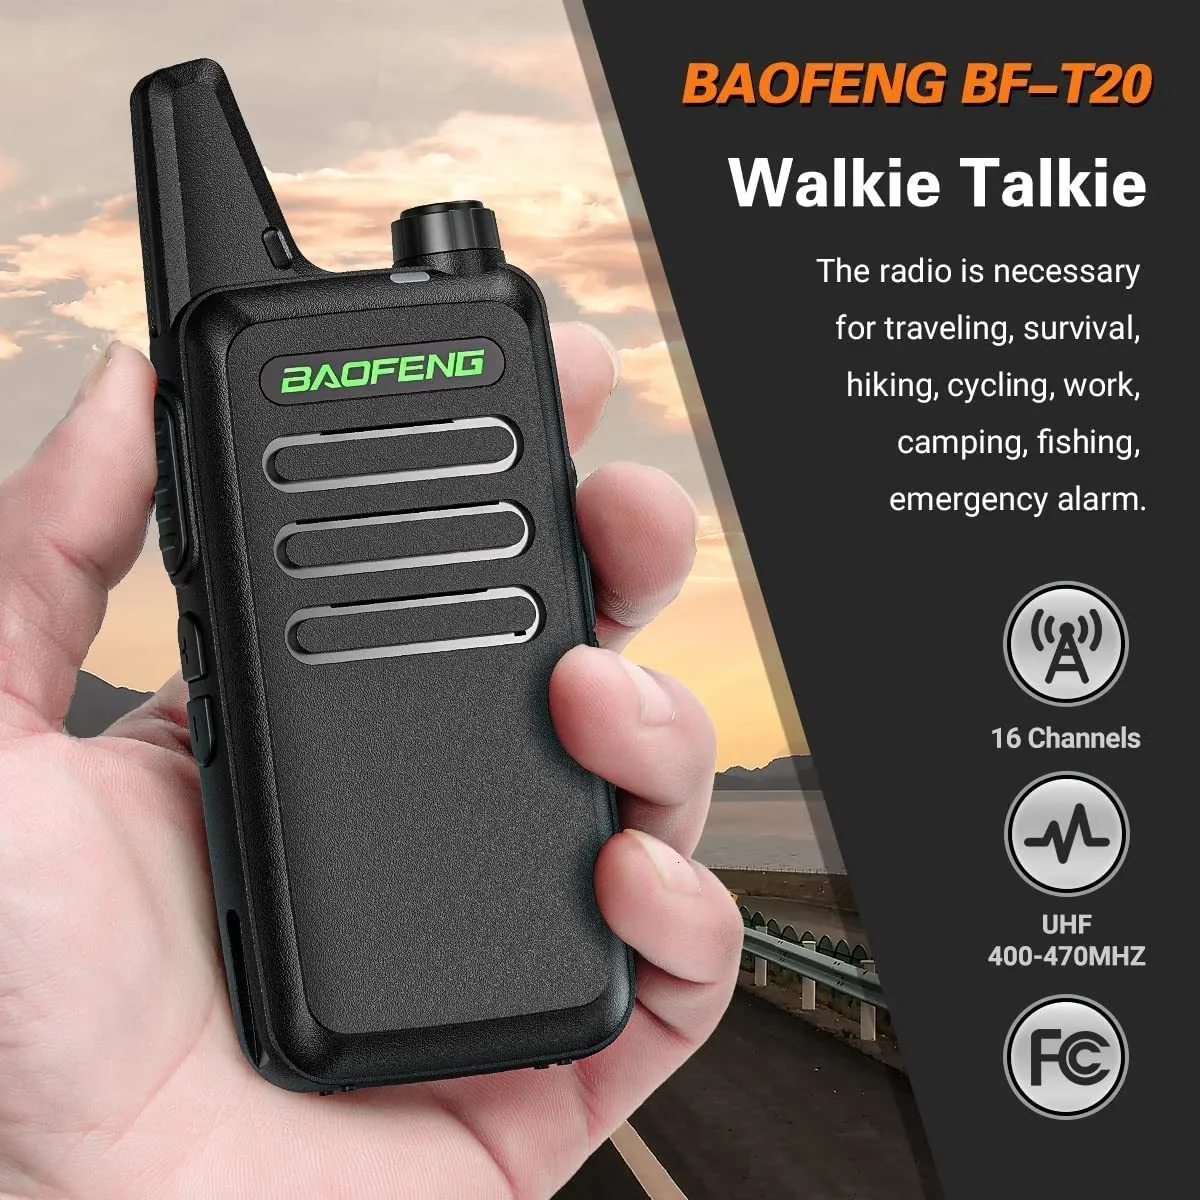 Handheld Walkie Talkies, 10KM Long Range 2-Way Radio 16-Channel with  Earphones Black (2Pcs/Pair) 